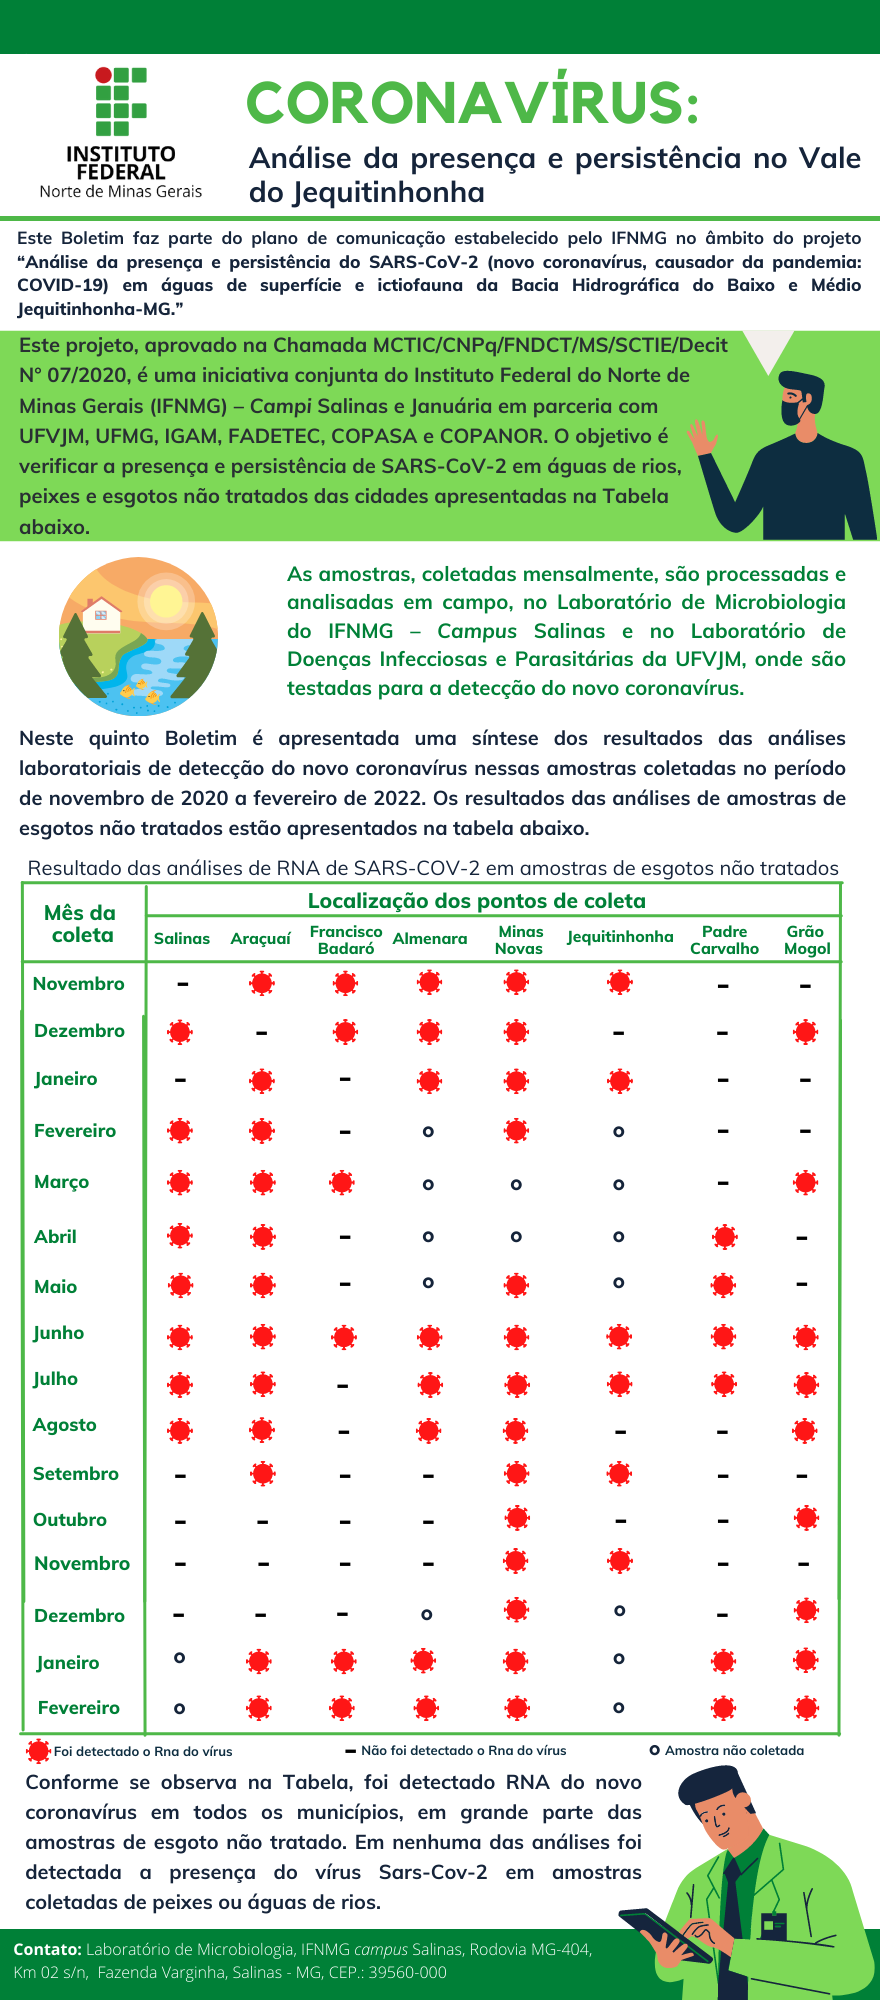 Prefeitura Municipal de São João Nepomuceno - Atualização dos números  Corona vírus (COVID-19) Dia 19 de ABRIL de 2022